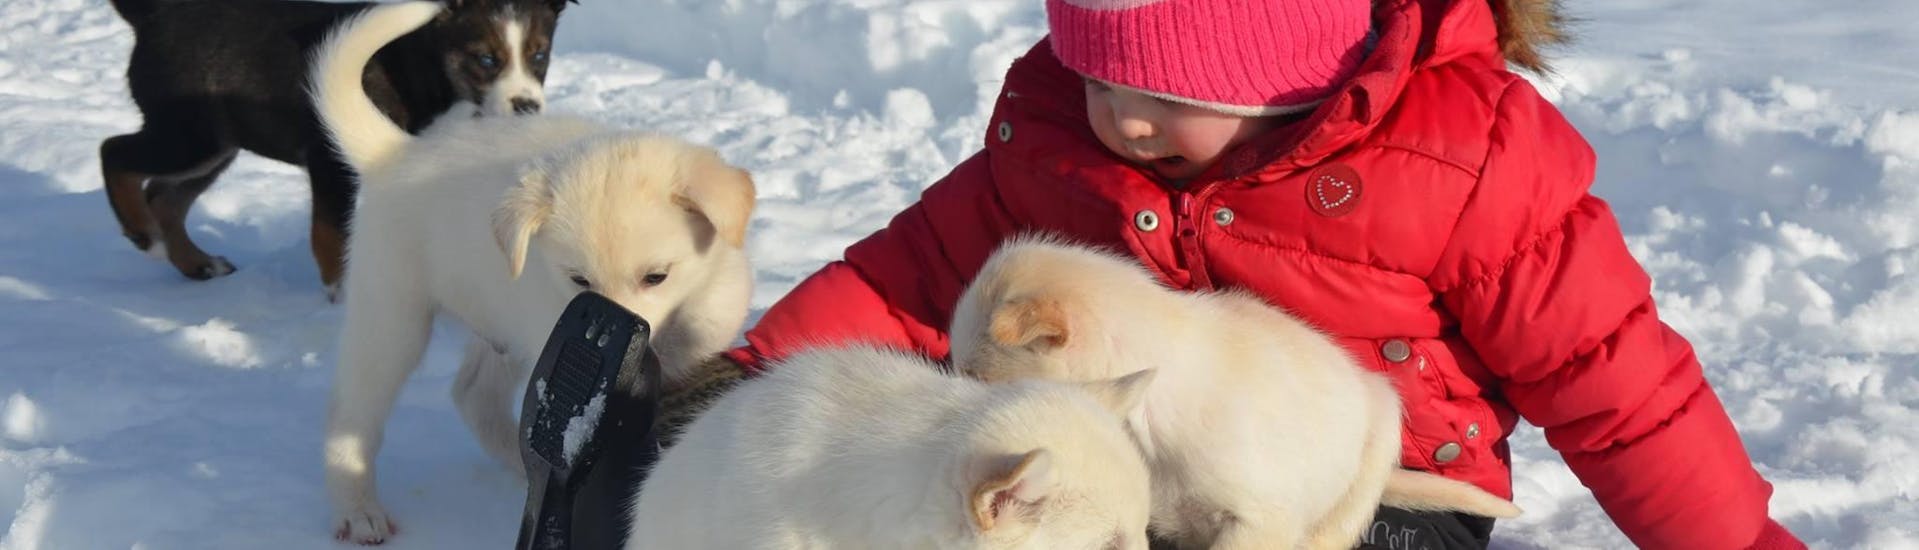 Een klein meisje speelt in de sneeuw met puppies tijdens Husky Kennel Visit in Kopperå bij Norway Husky Adventure.